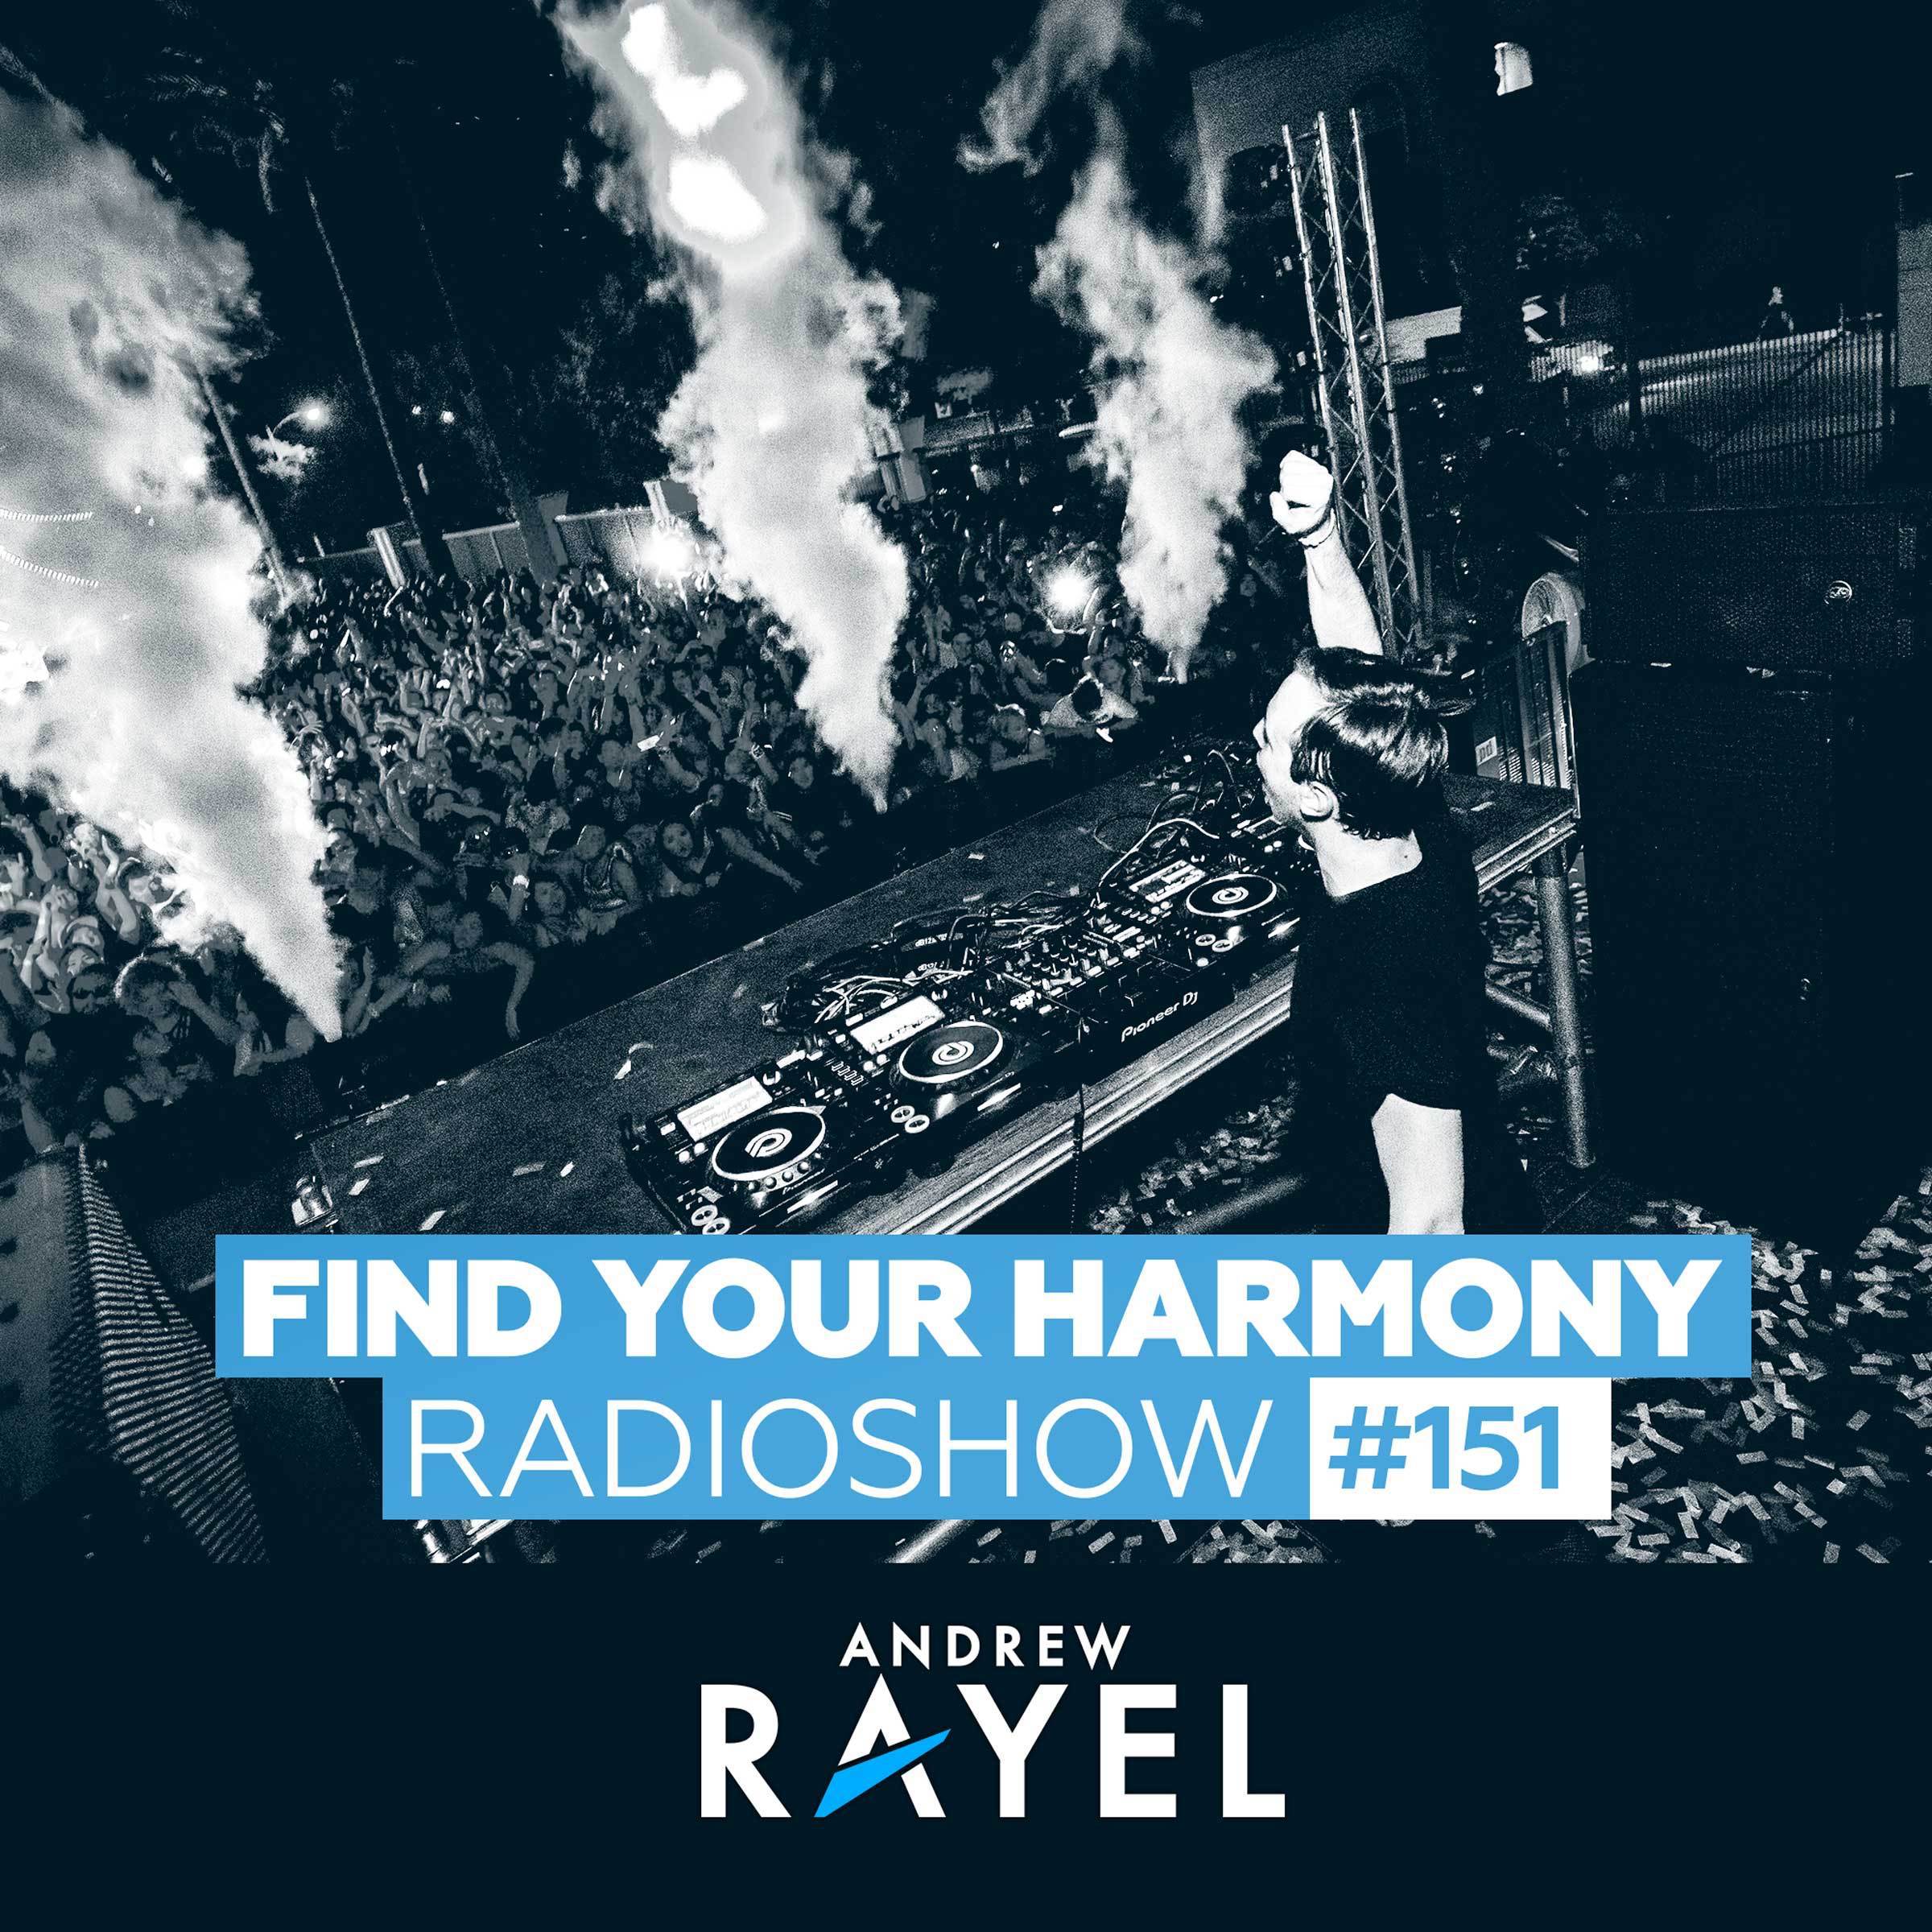 Find Your Harmony Radioshow #151专辑